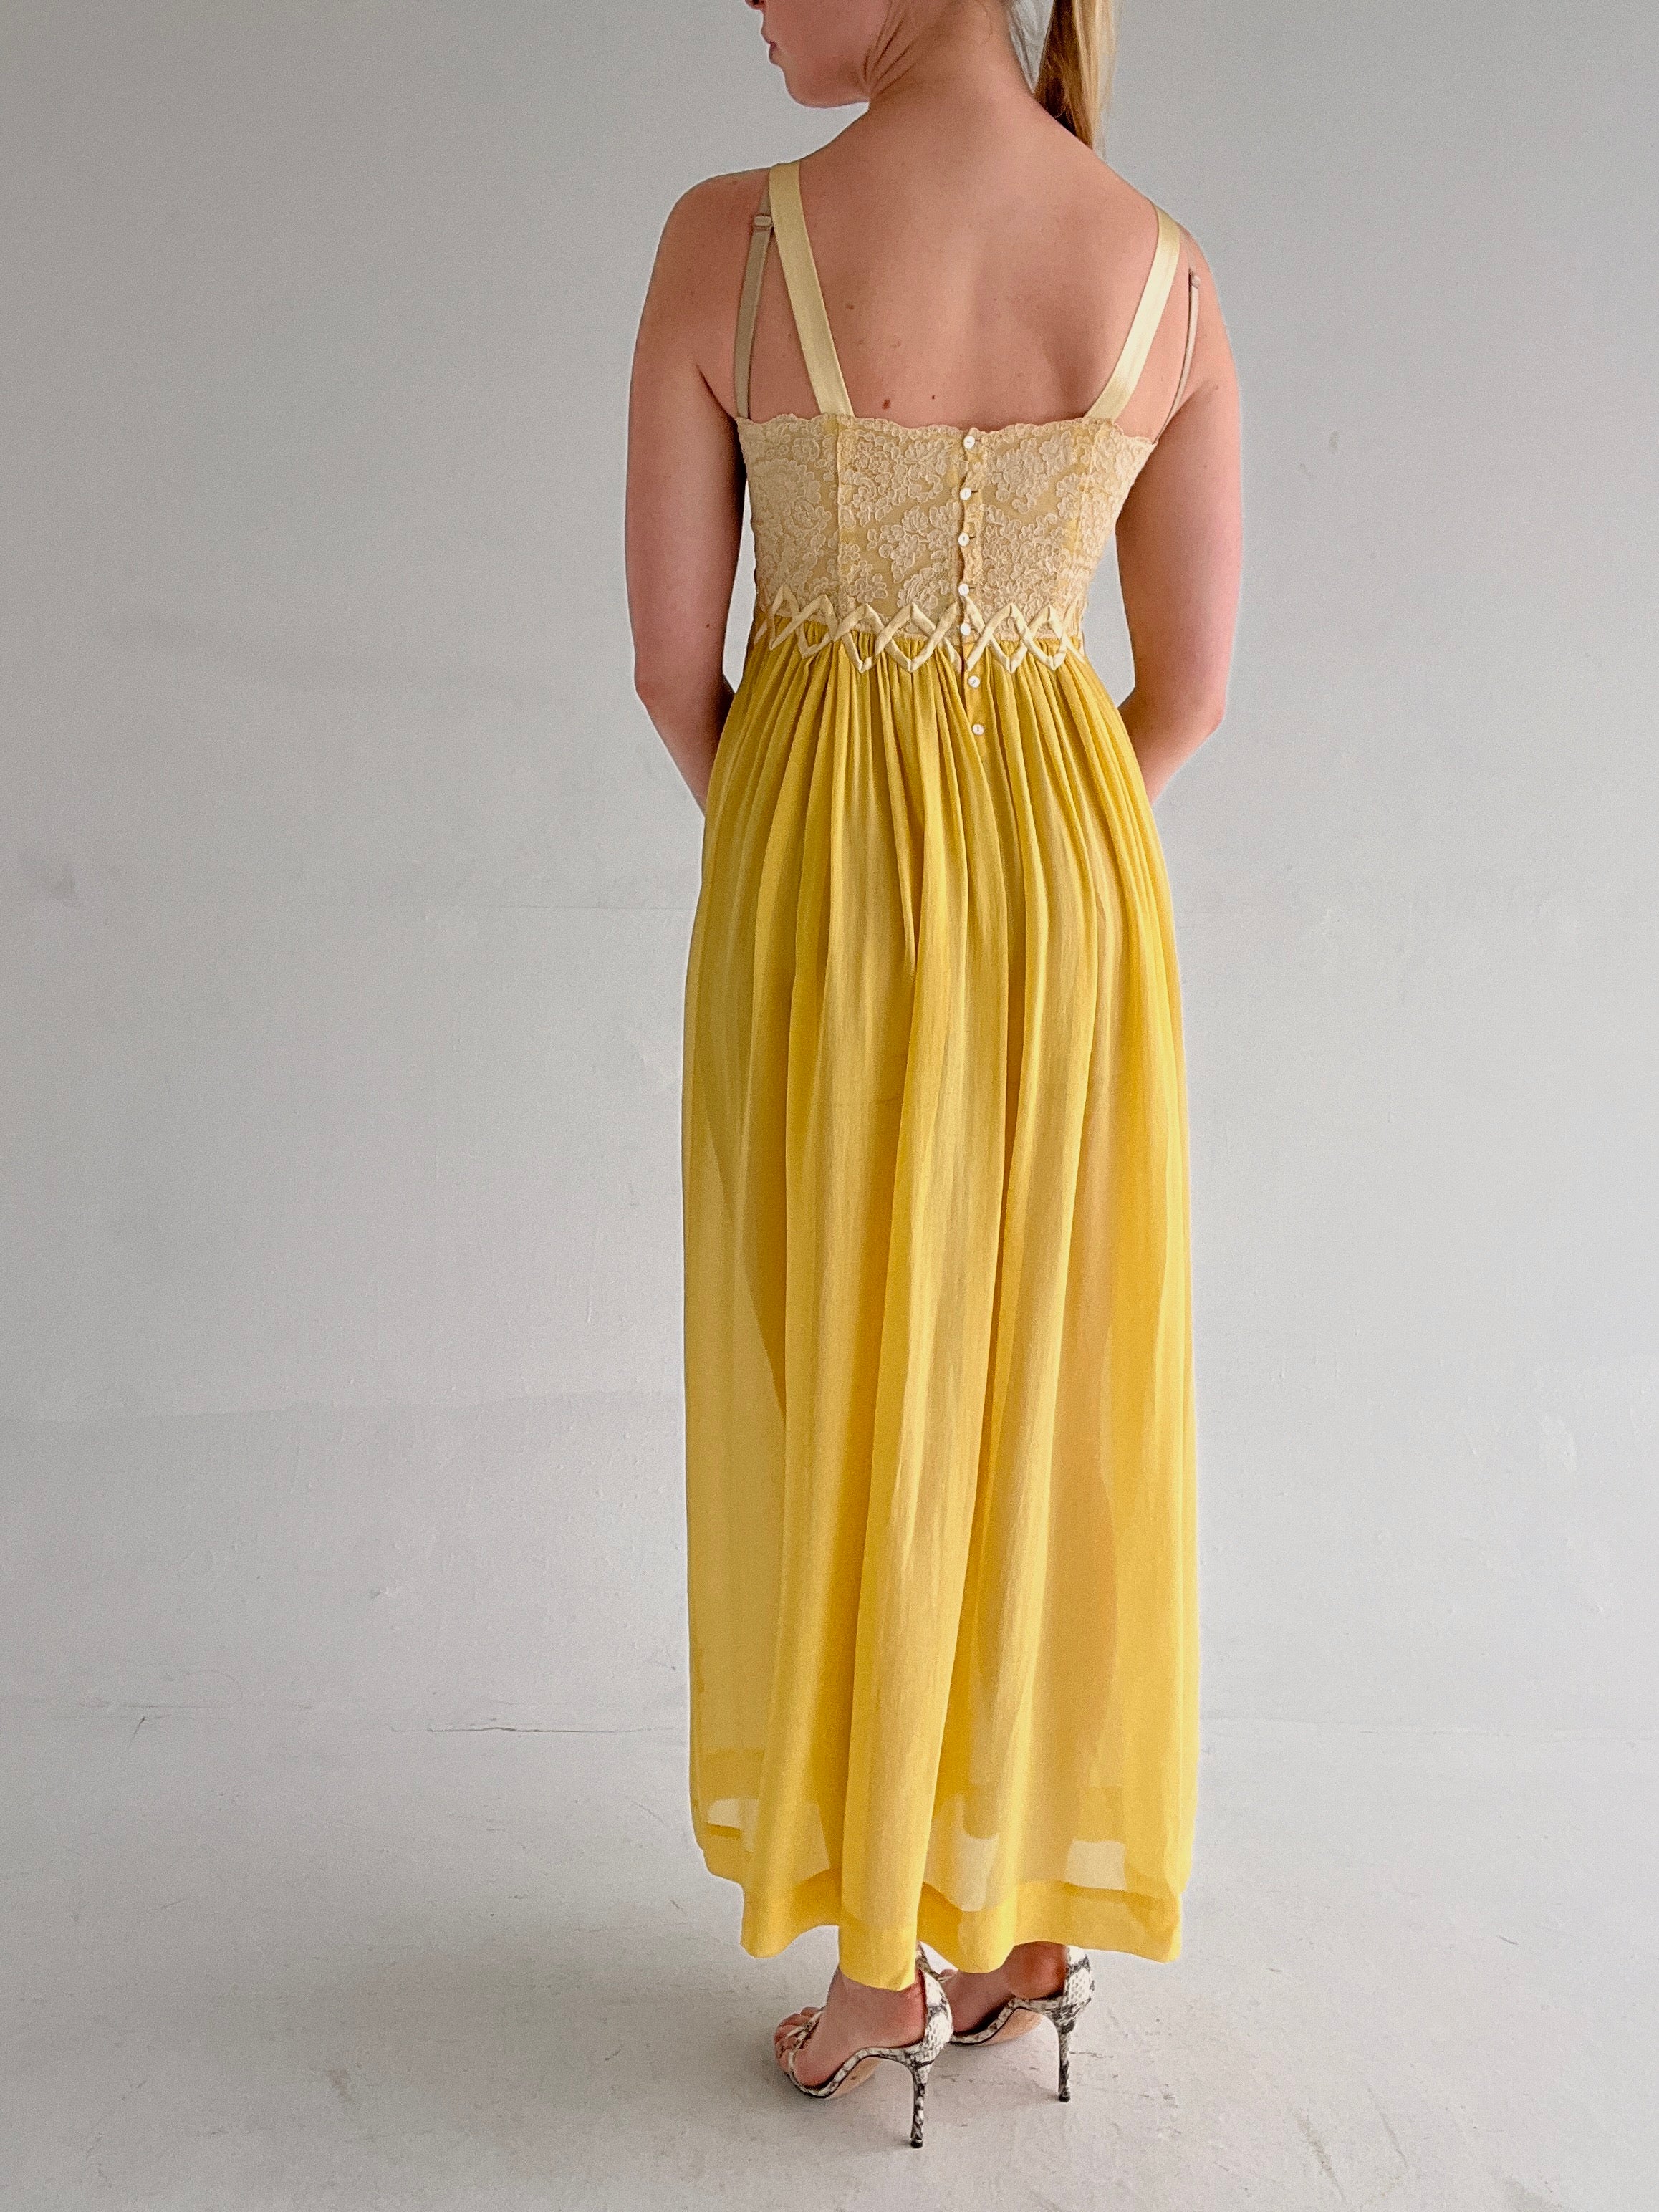 1930's Sunflower Yellow Silk Chiffon Dress with Cream Lace